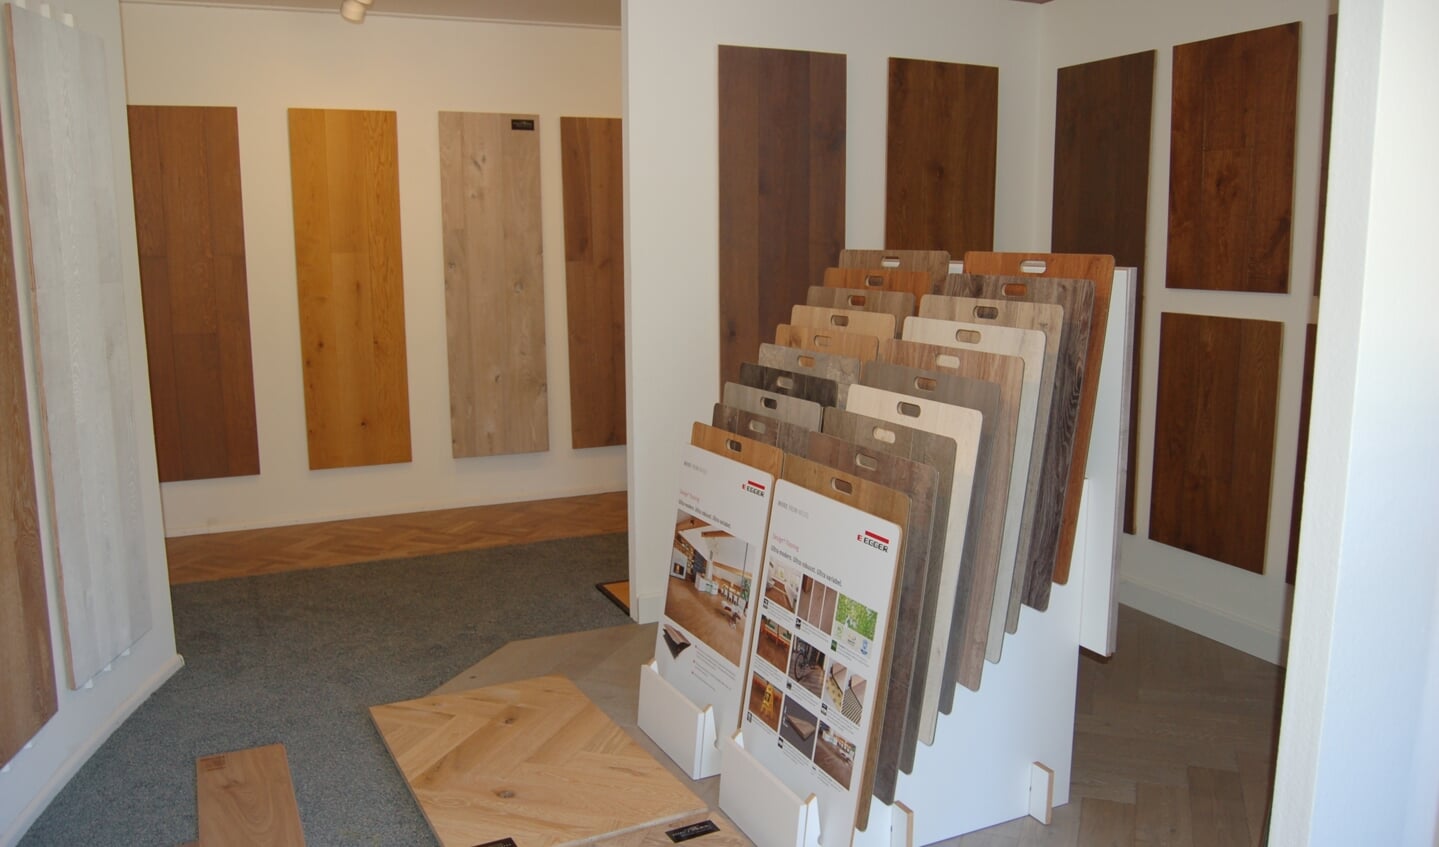 Grevers biedt hout, laminaat, kurk en PVC. Ook te zien in de showroom. Foto: Verona Westera